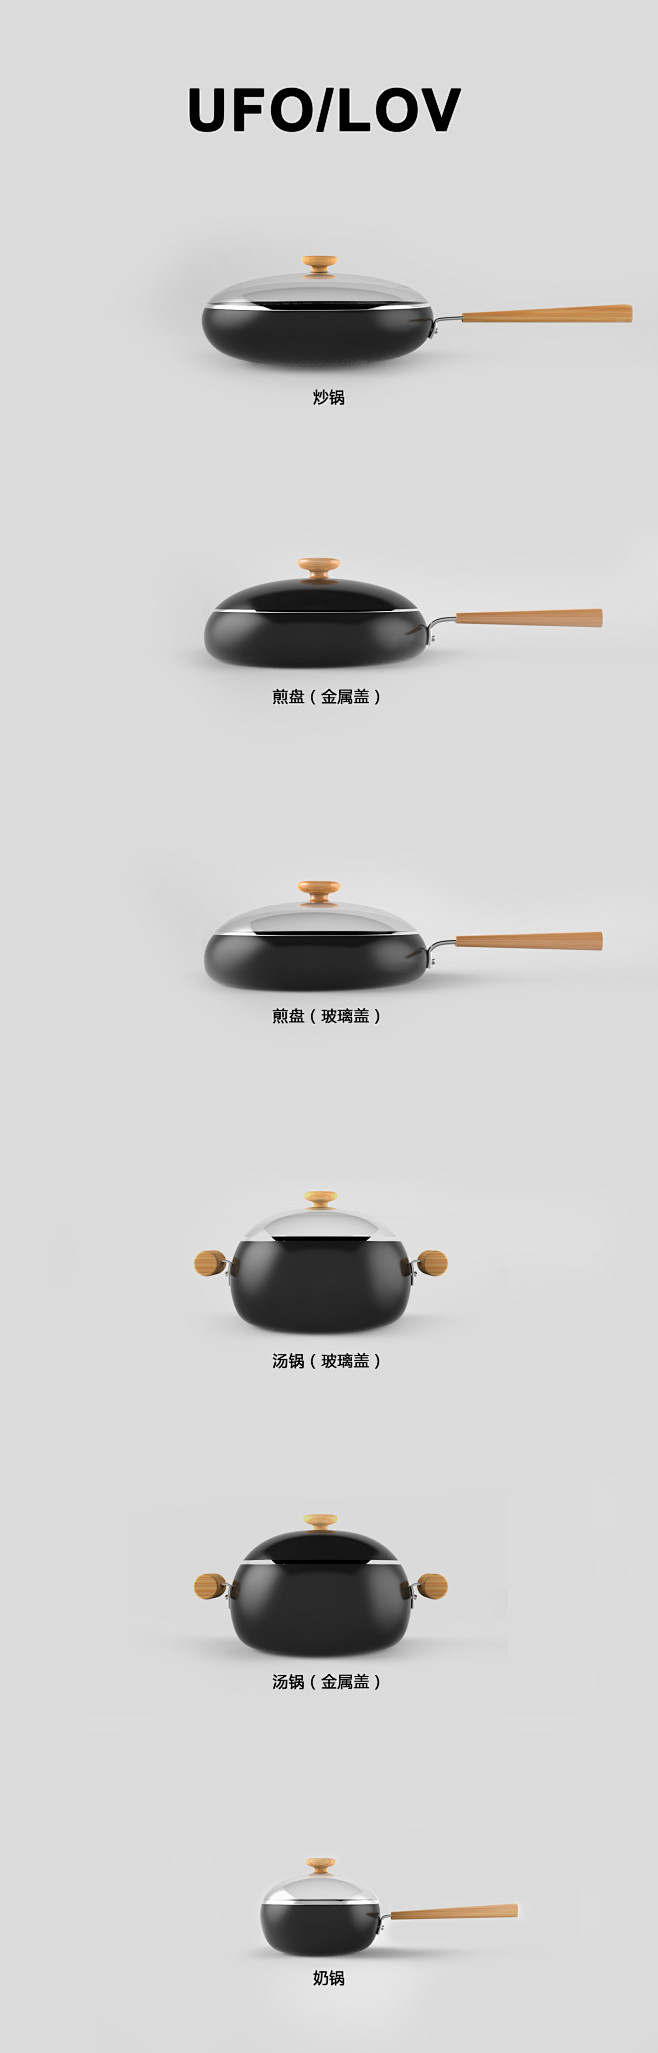 命名为UFO/LOV的锅具设计